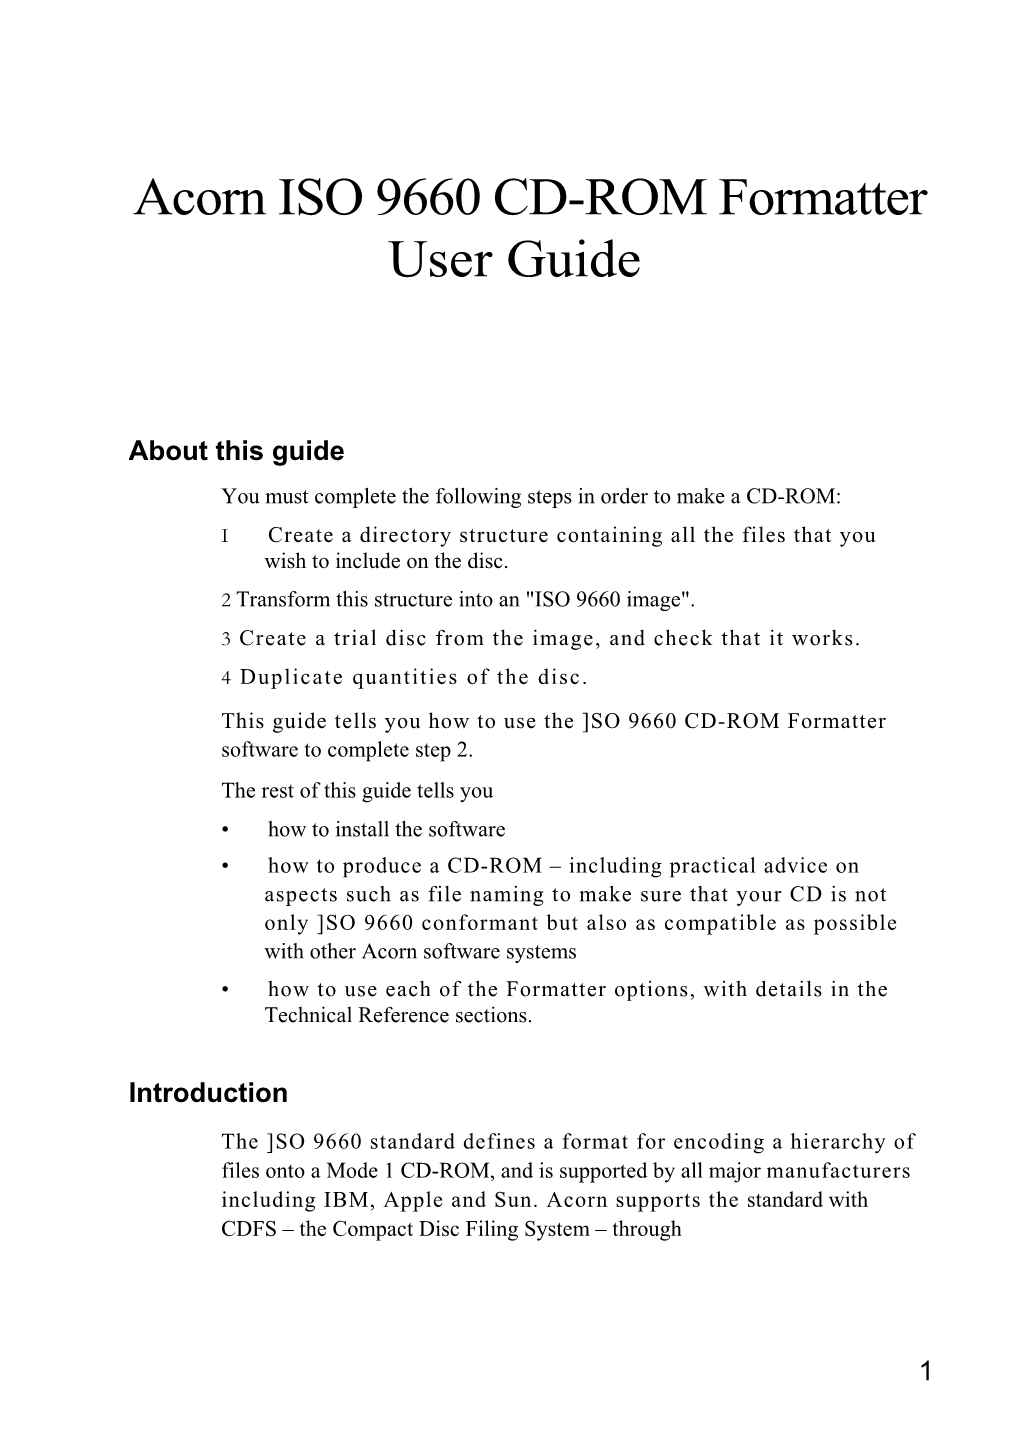 Acorn ISO 9660 CD-ROM Formatter User Guide